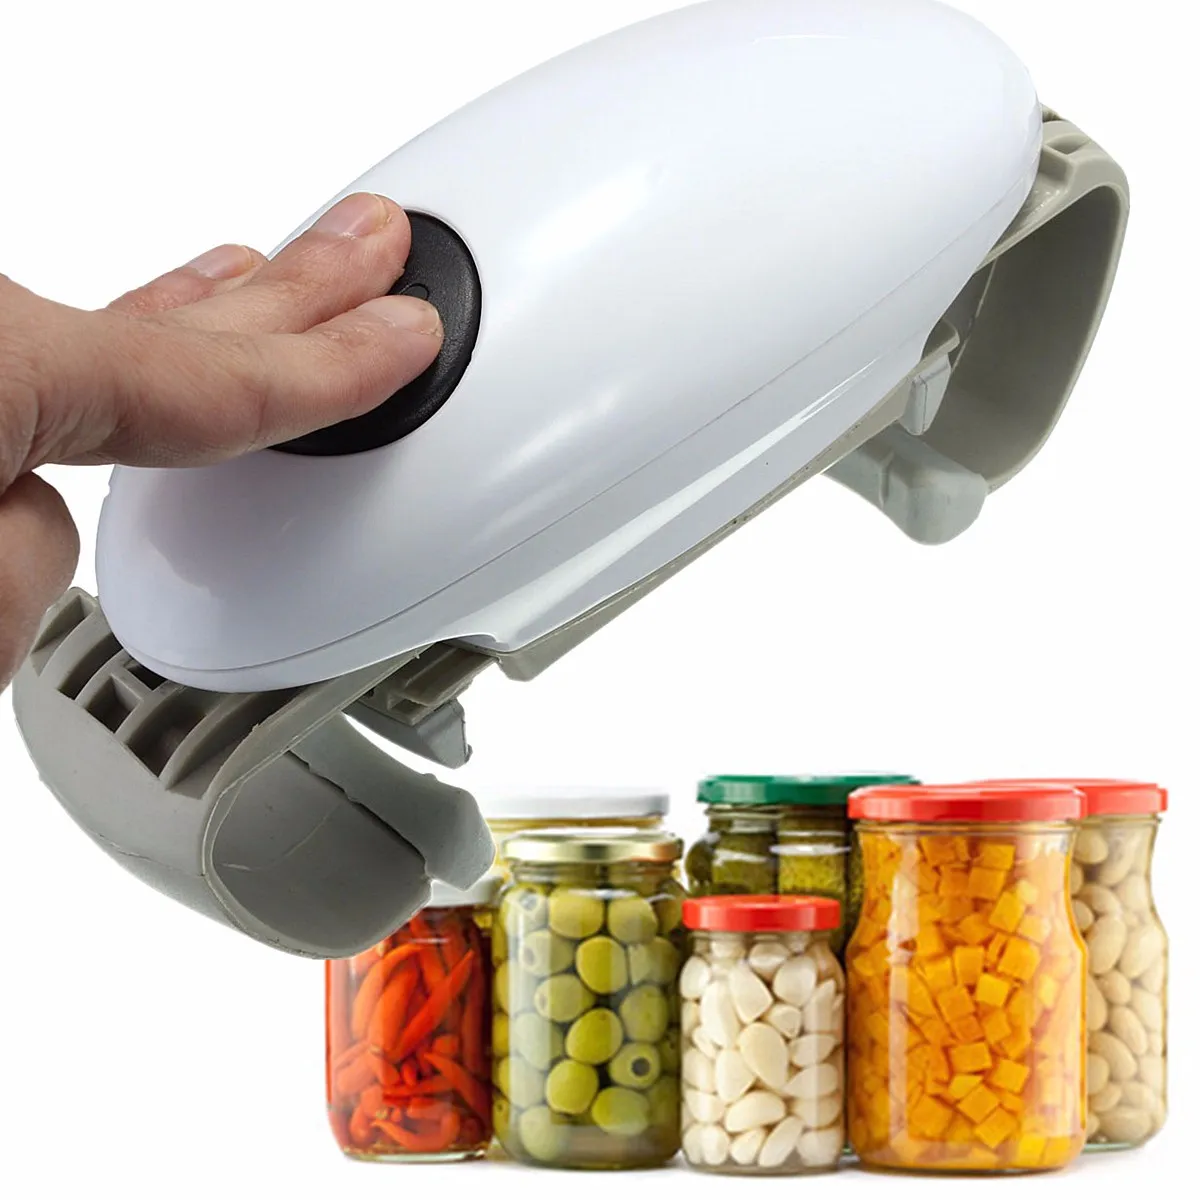 Главная необходимый помощник One Touch Jar Может канистры открывалка для бутылок автоматический Электрический Hands Free управление кухонные инструменты, гаджеты